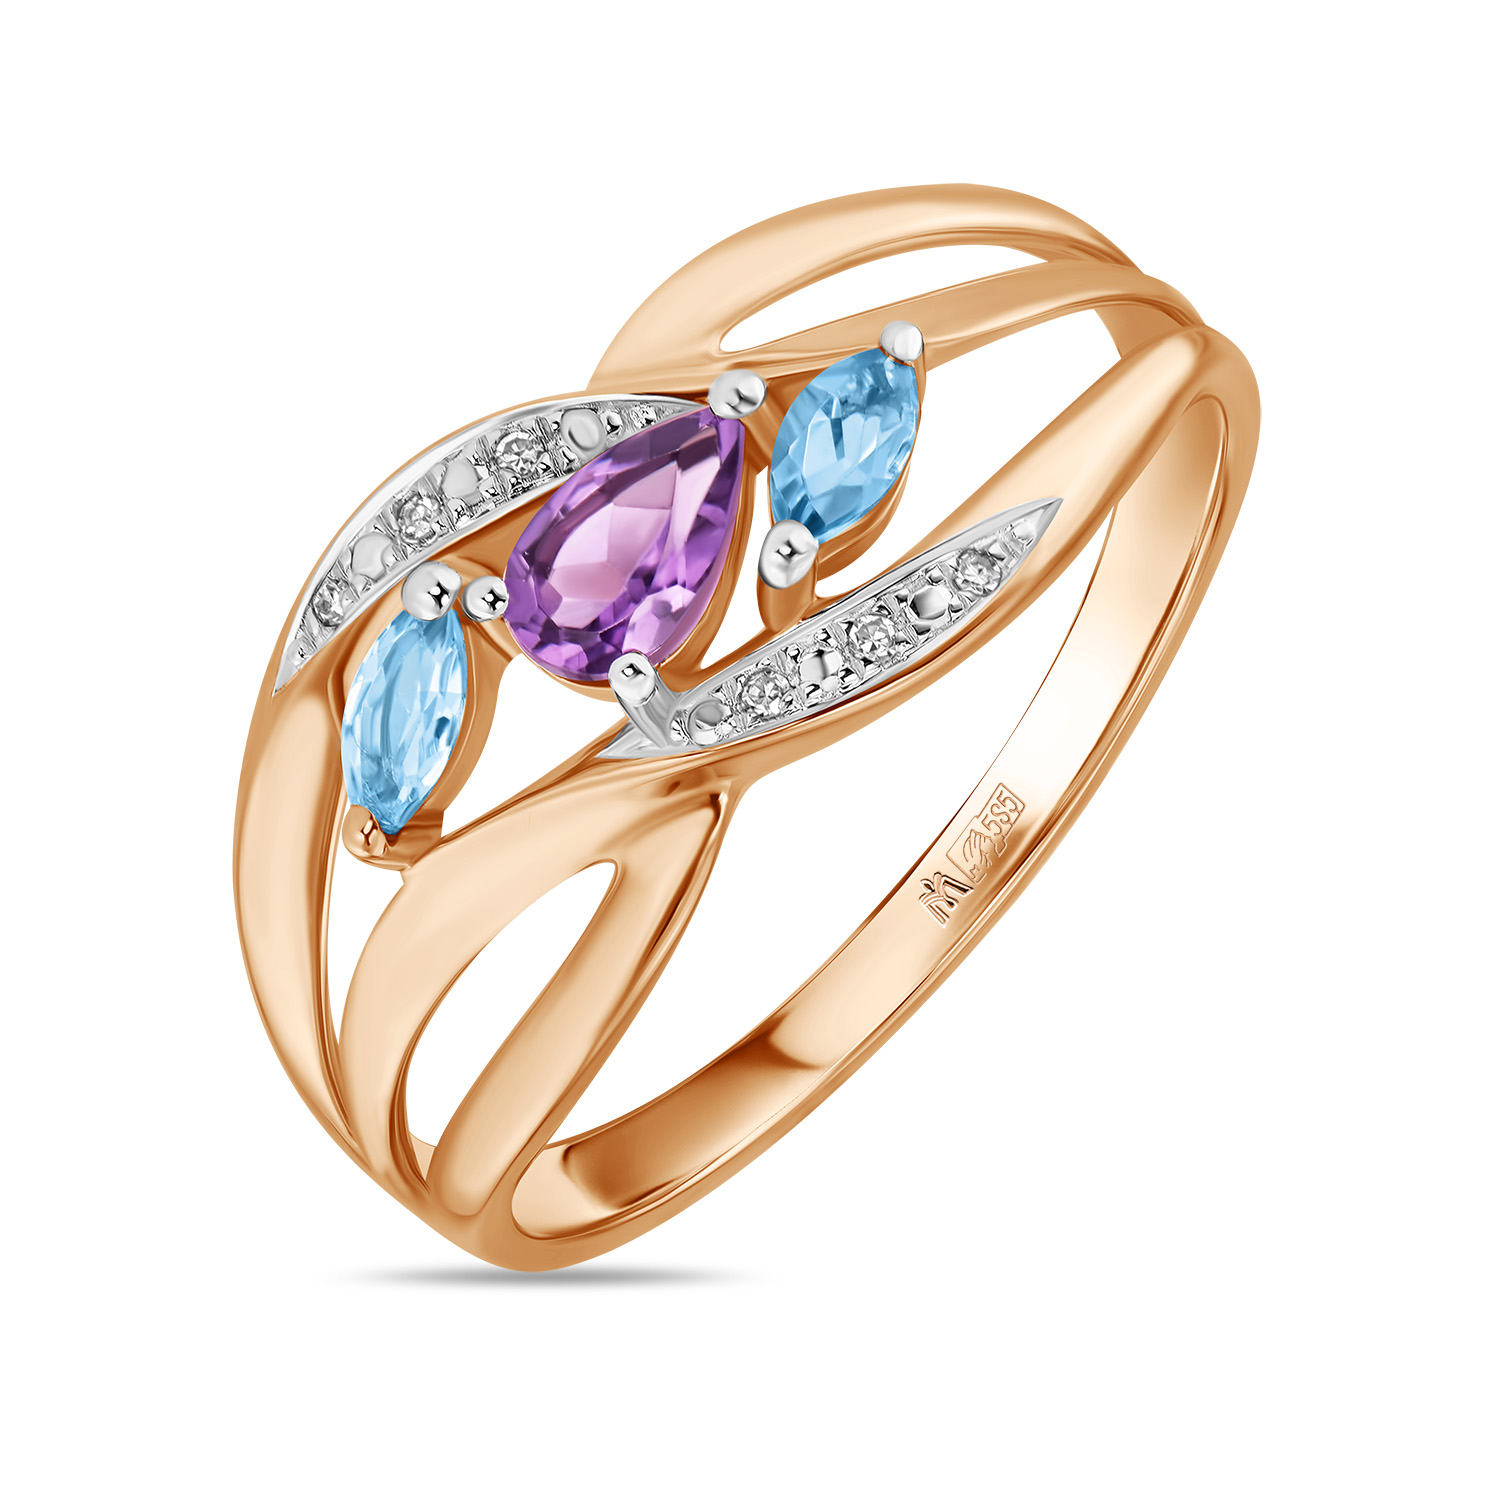 Кольца МЮЗ Золотое кольцо с аметистом, топазом и бриллиантами кольца мюз золотое кольцо с аметистом топазом бриллиантами и цветными бриллиантами